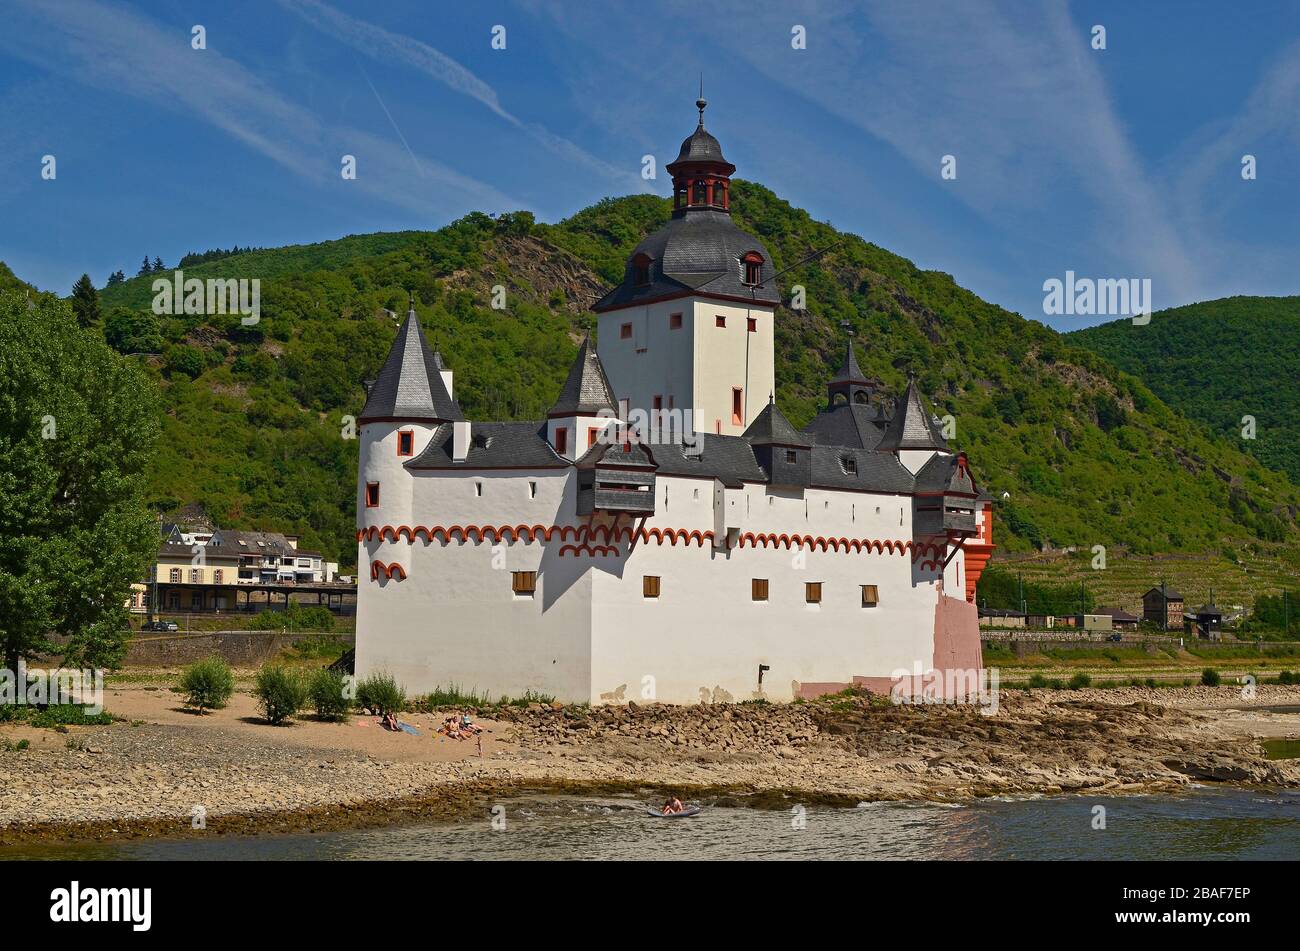 Kaub, Allemagne - 29 mai 2011: Personnes non identifiées sur la petite île du Rhin avec Château Pfalz dans la région du patrimoine mondial de l'UNESCO de la R Banque D'Images